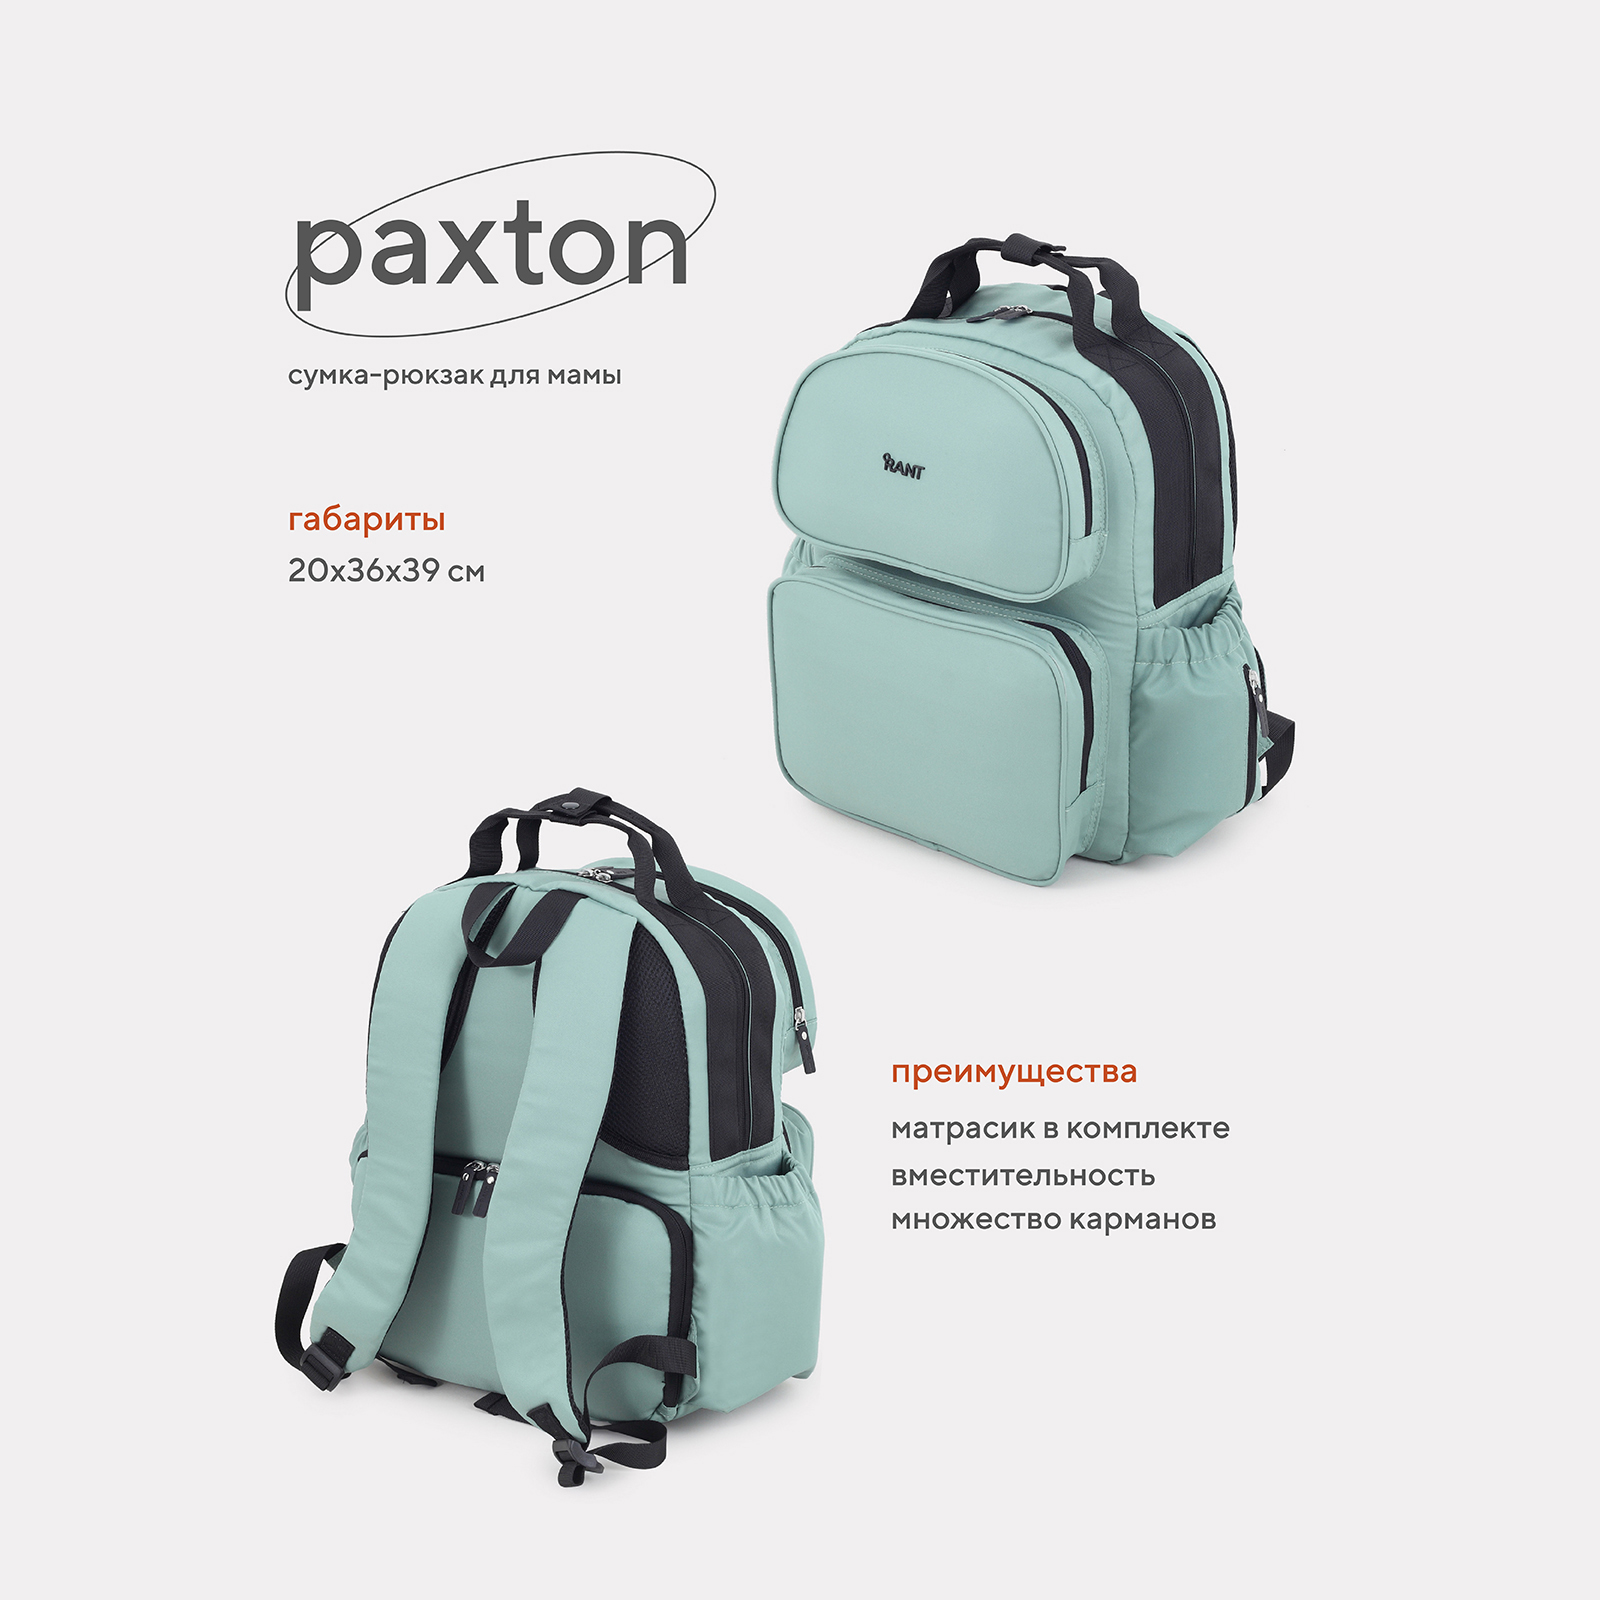 Сумка-рюкзак для мамы RANT Paxton RB008 Green сумка для мамы bugaboo changing bag forest green 2306010083